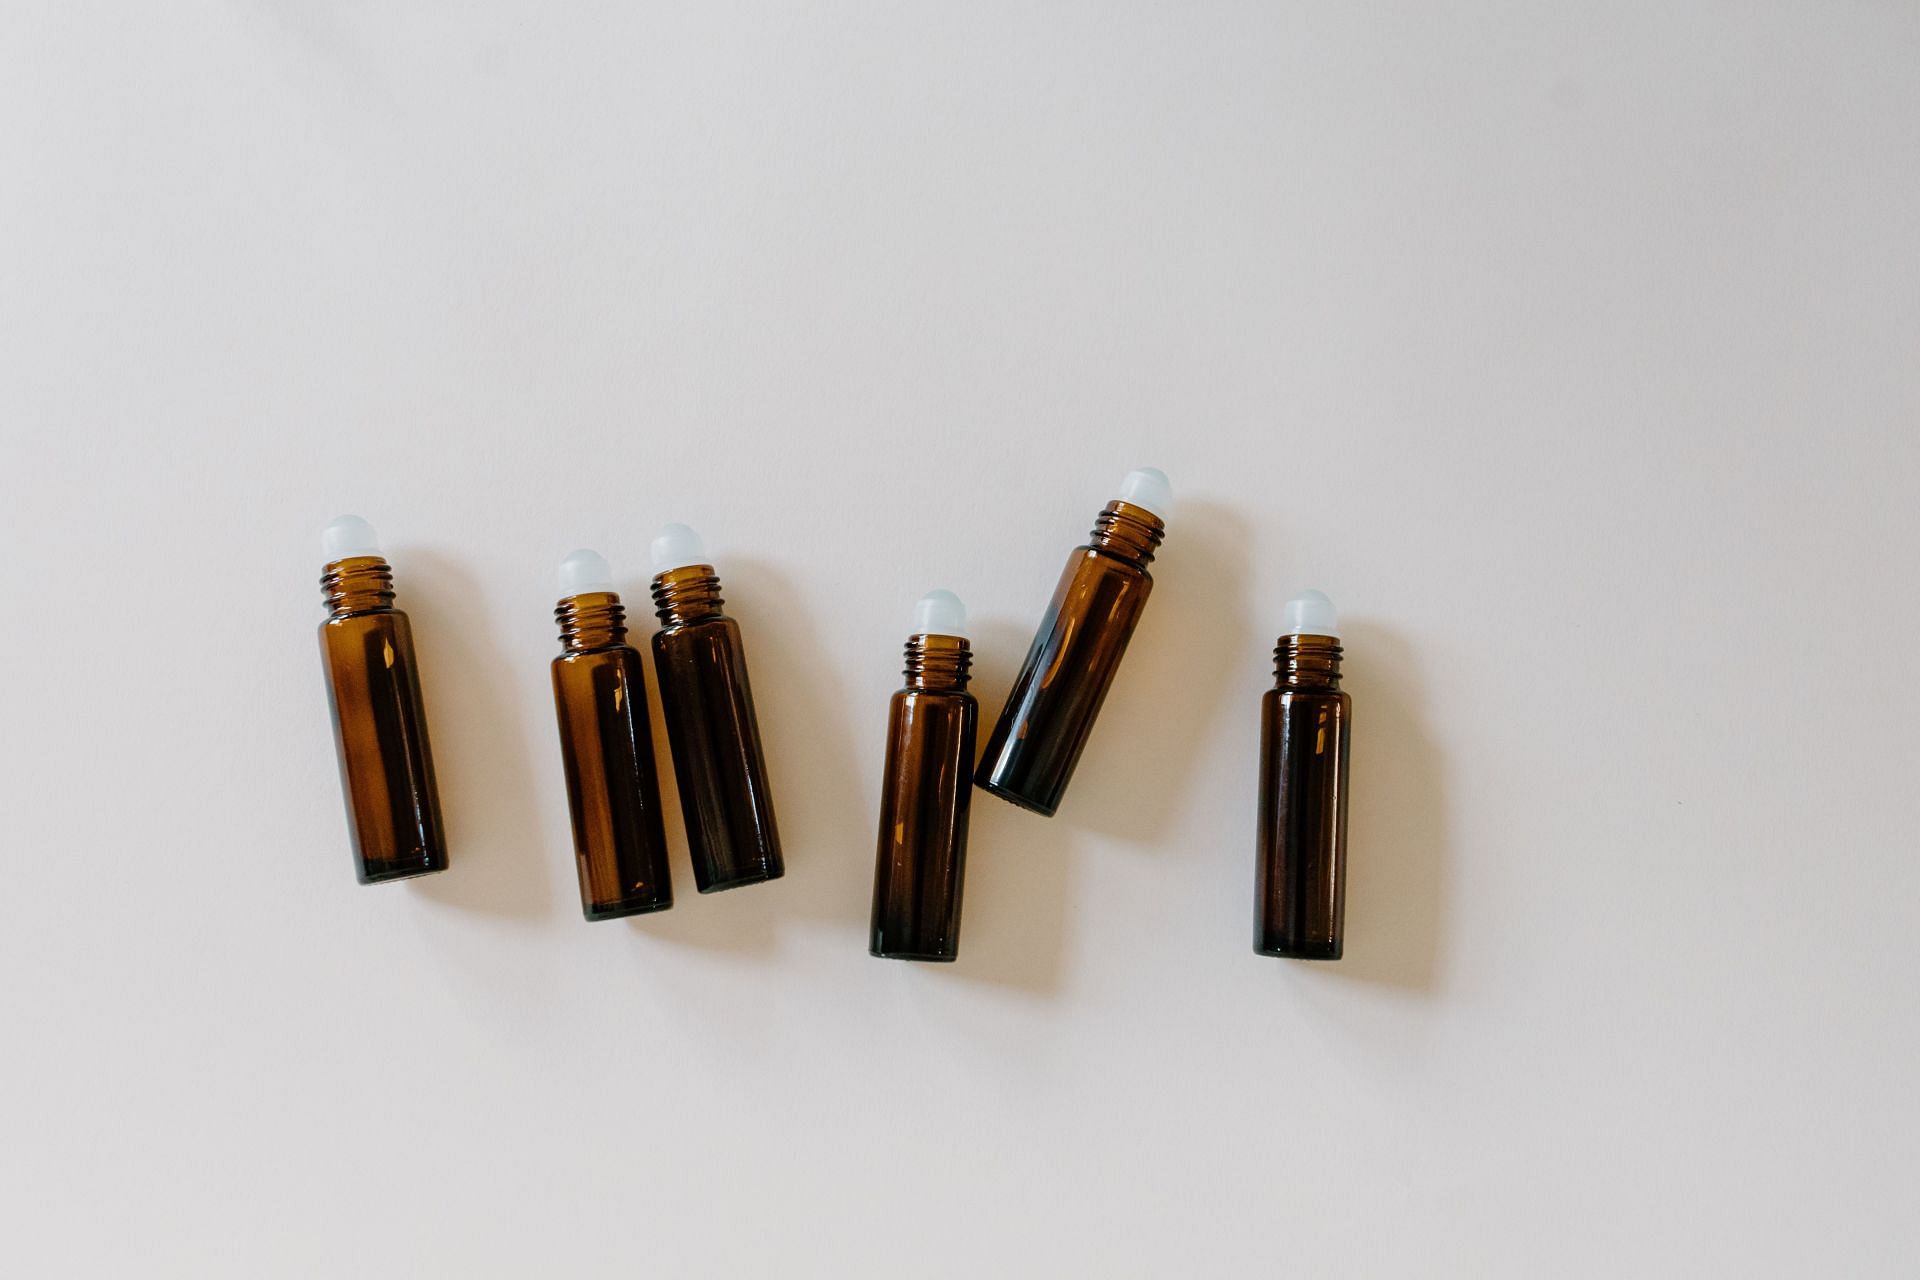 Benefits of tea tree oil for skin (Image via Pexels / Tara Winstead)